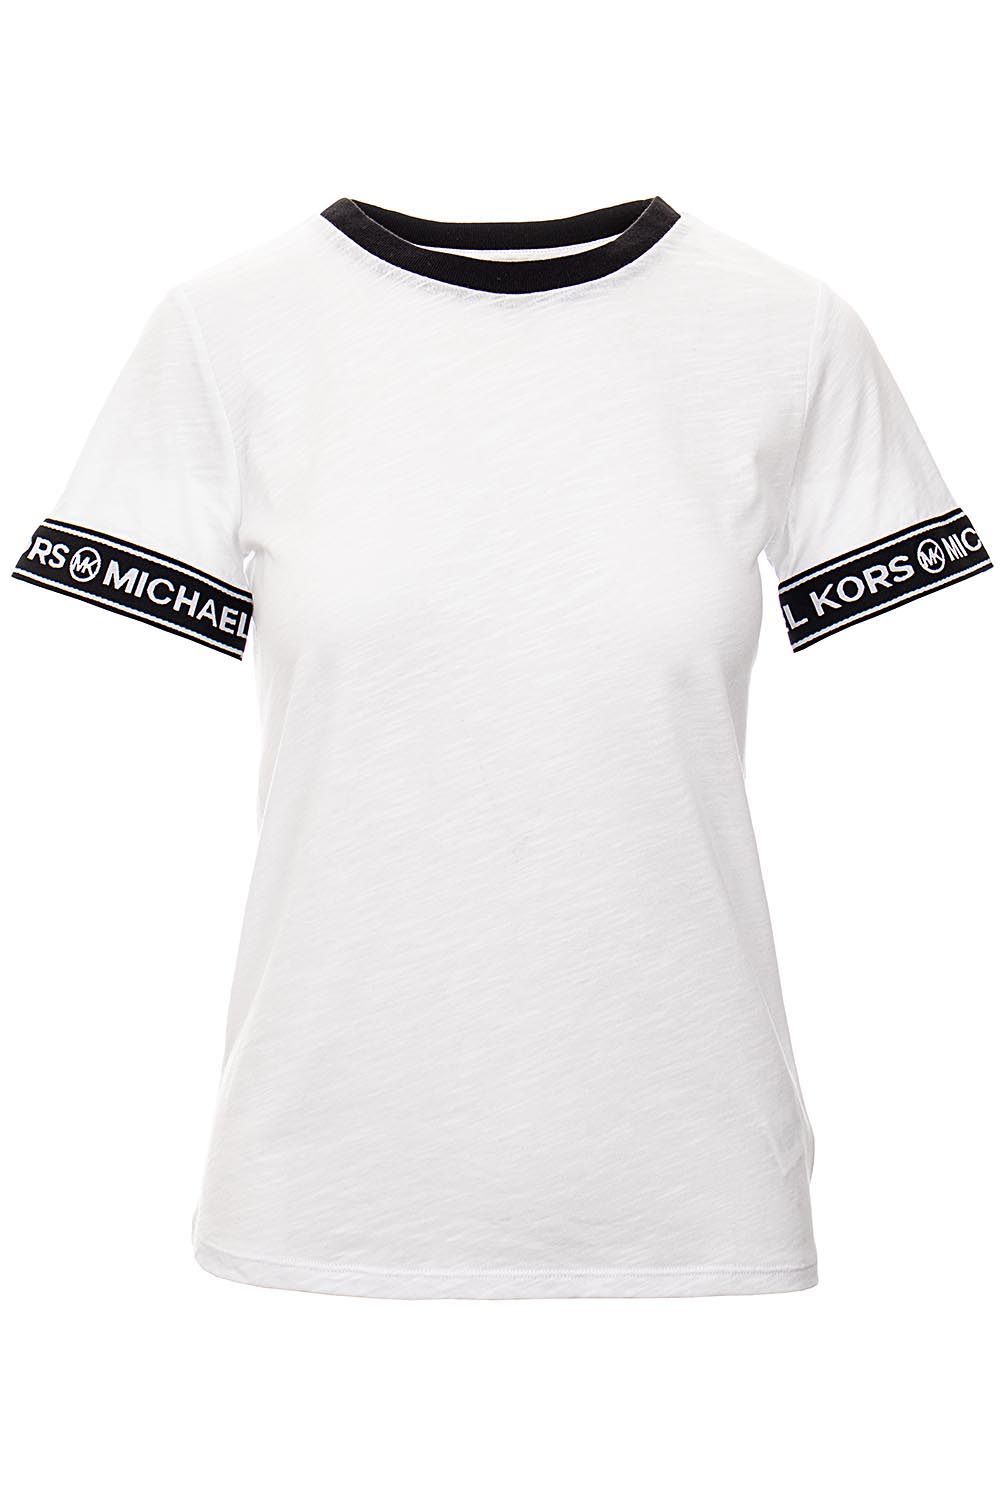 Michael Kors Dámské tričko bílé s logem na rukávu Velikost: S